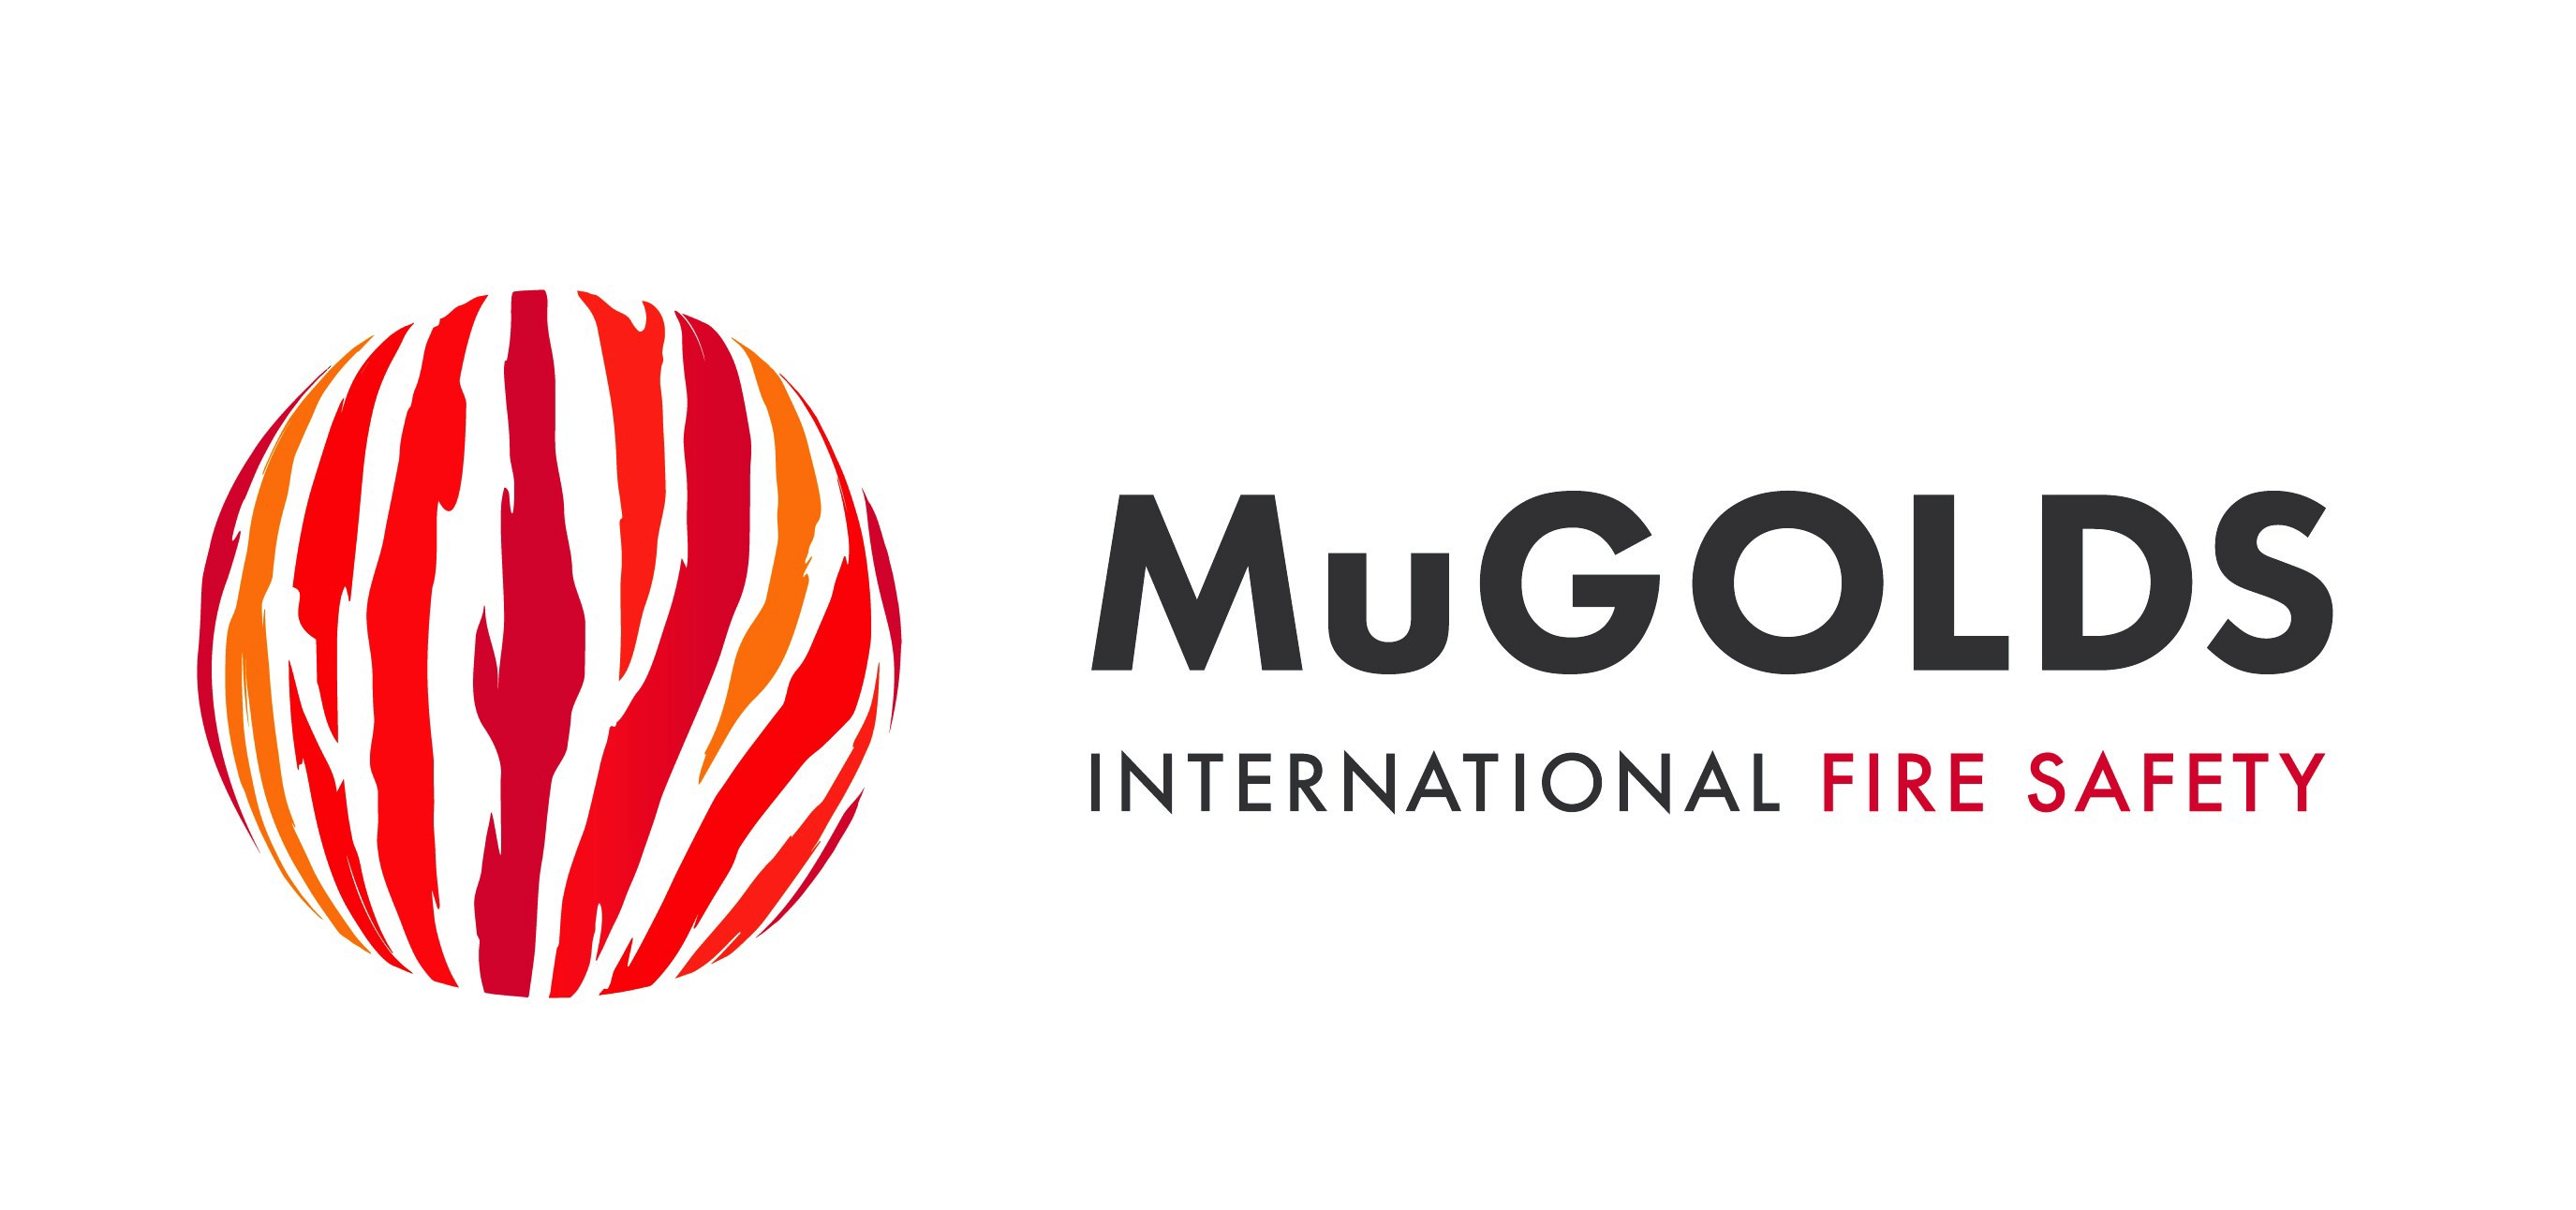 Mugolds International